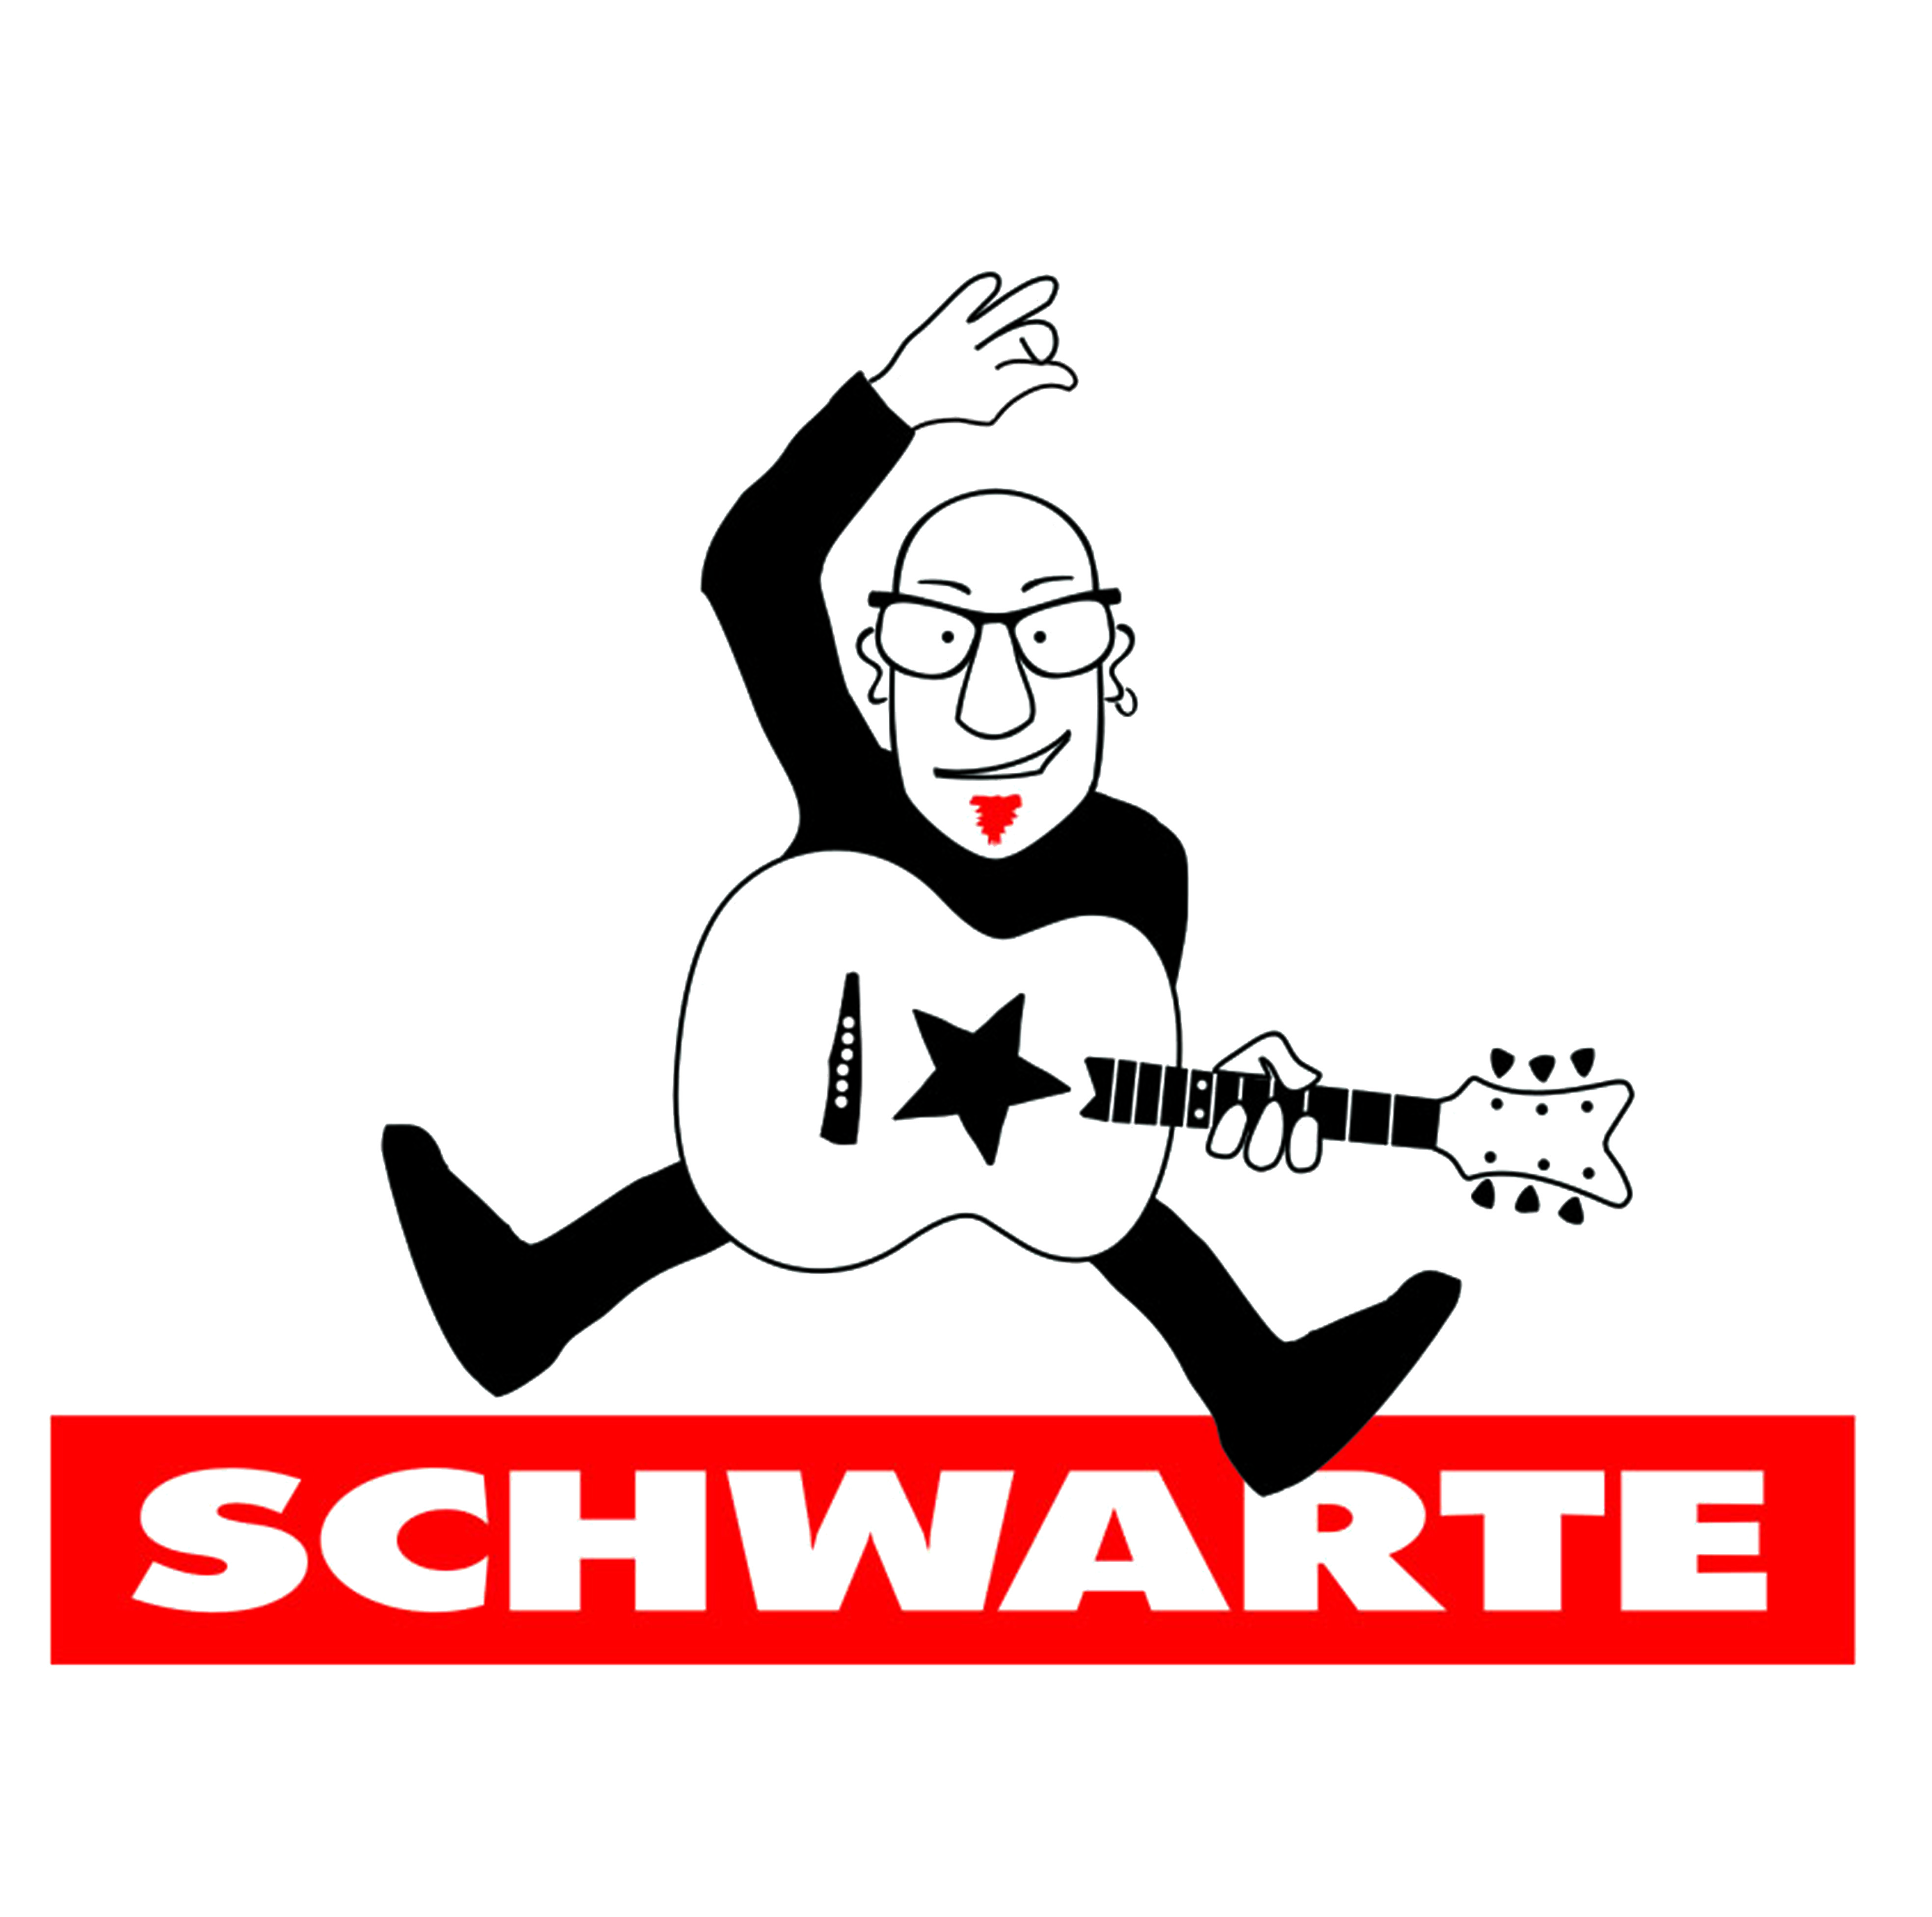 Schwarte